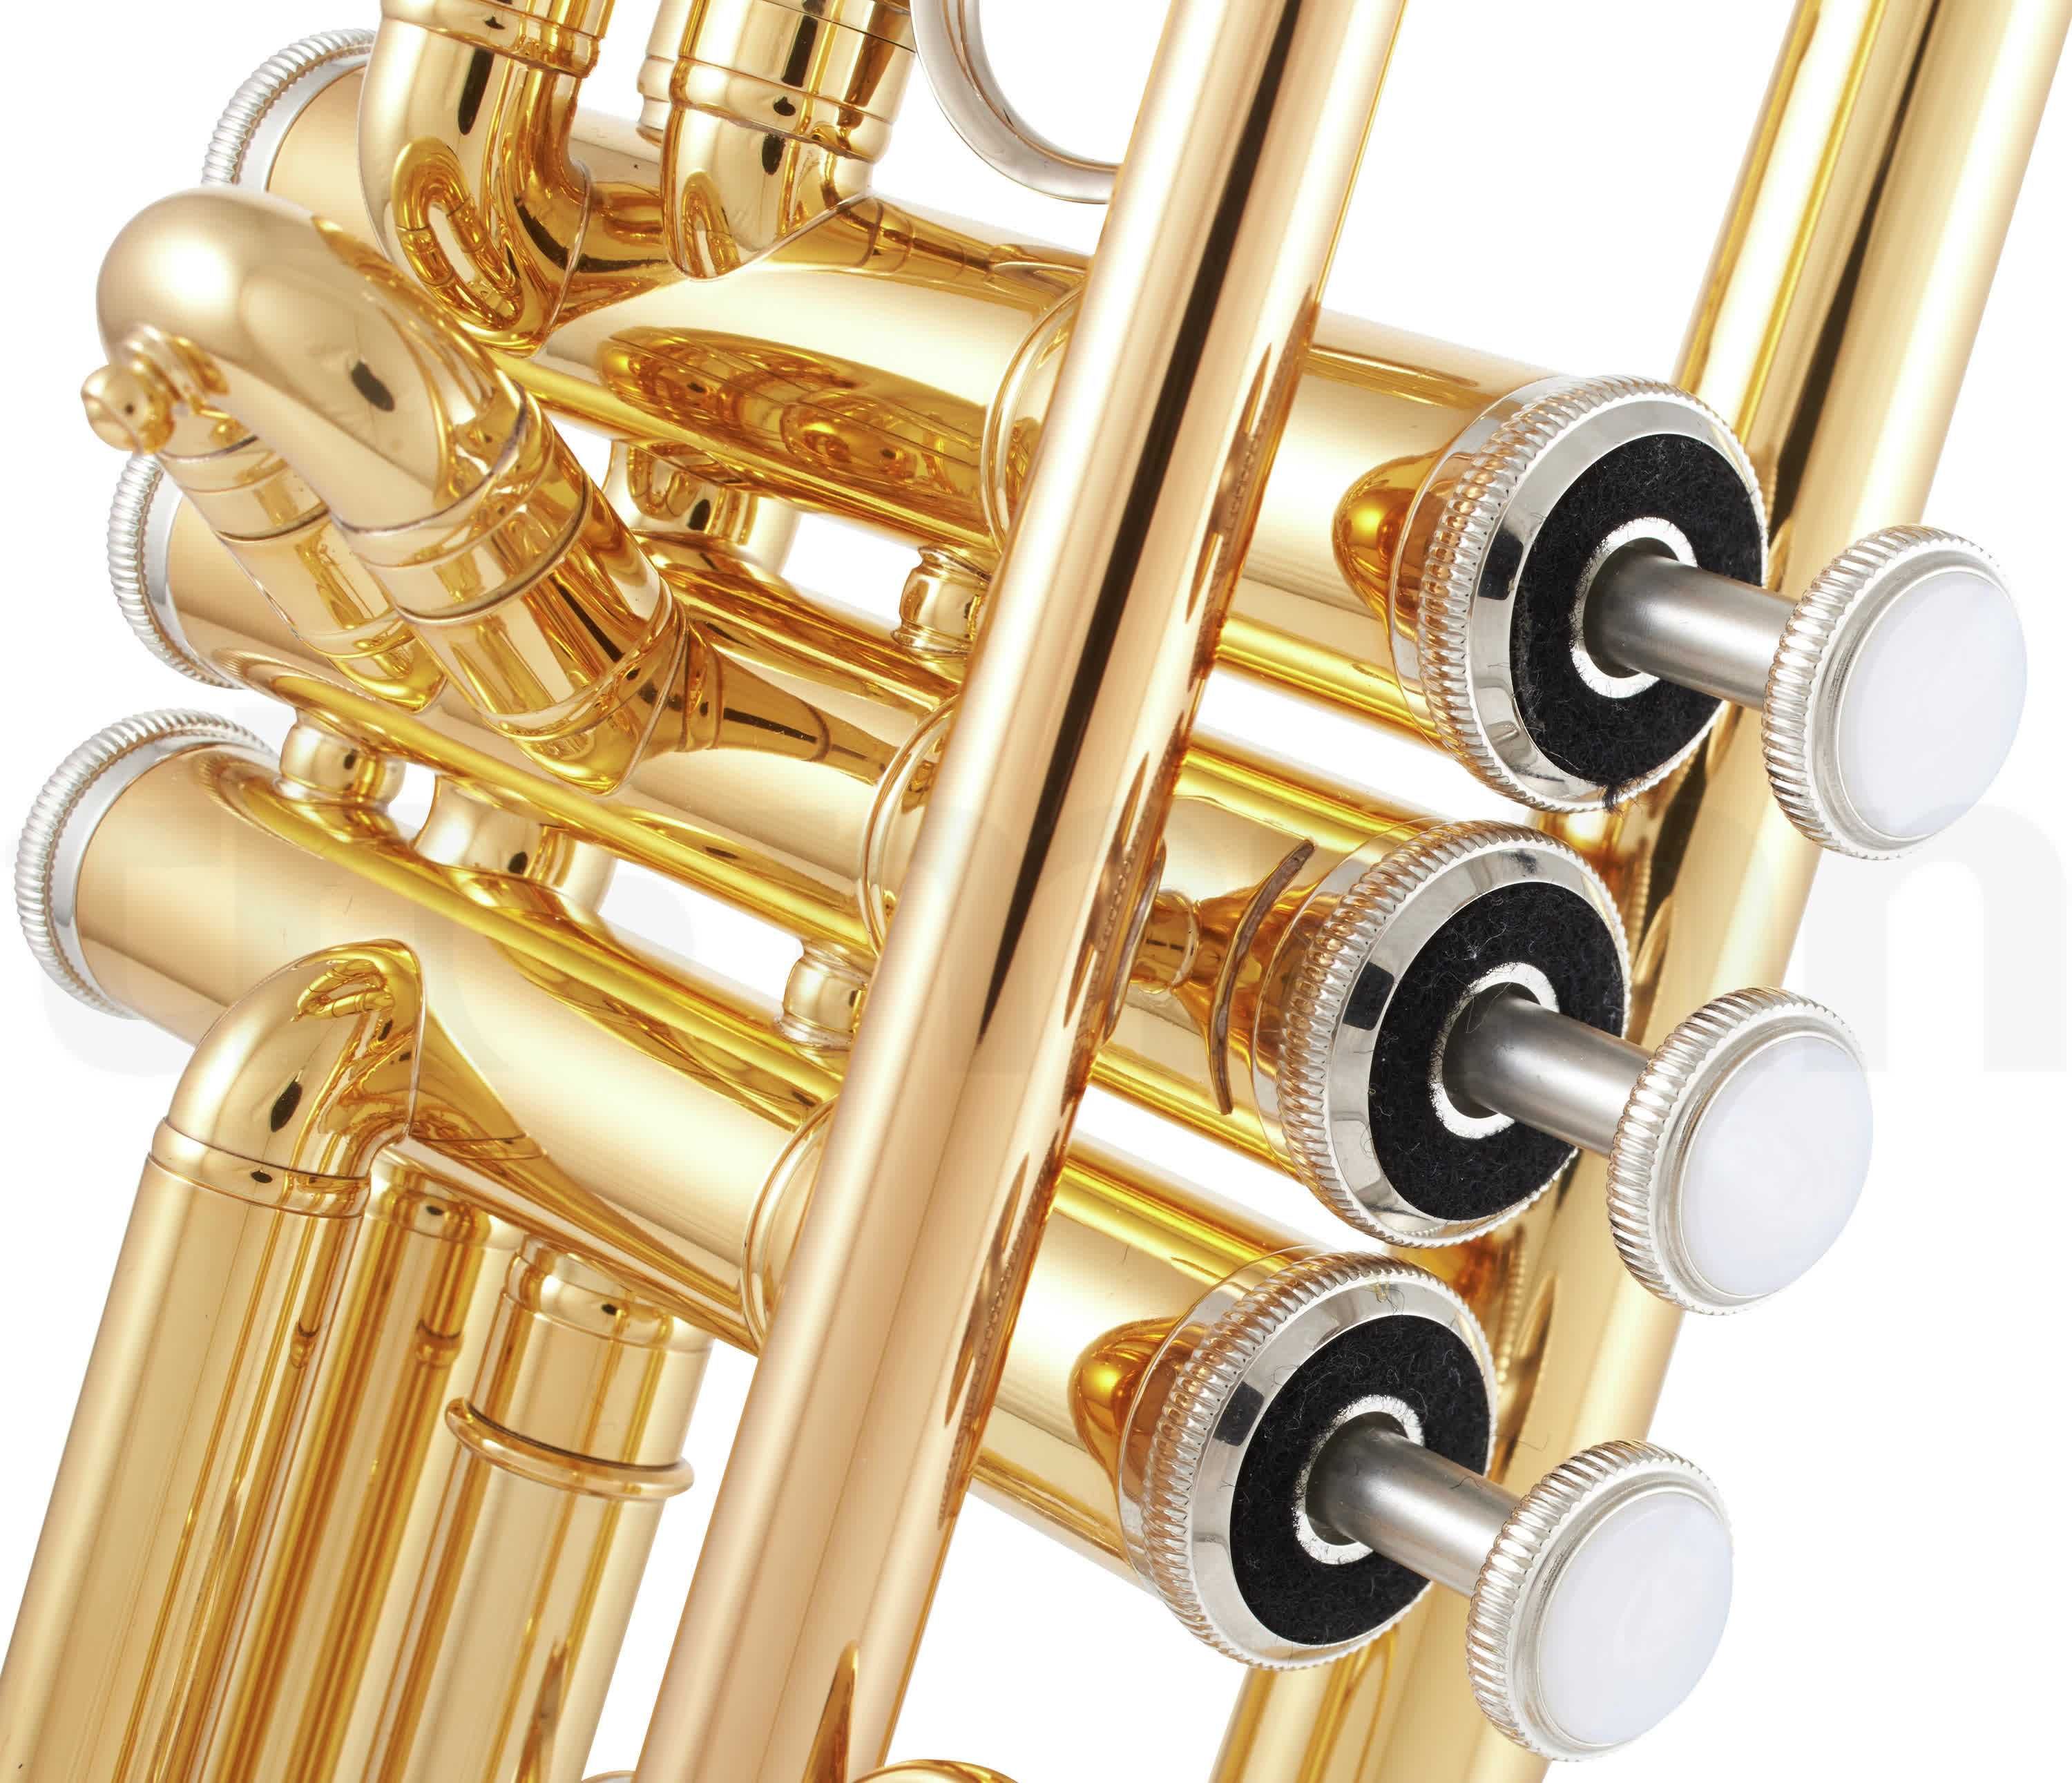 Trompeta Yamaha YTR-2330 auriu